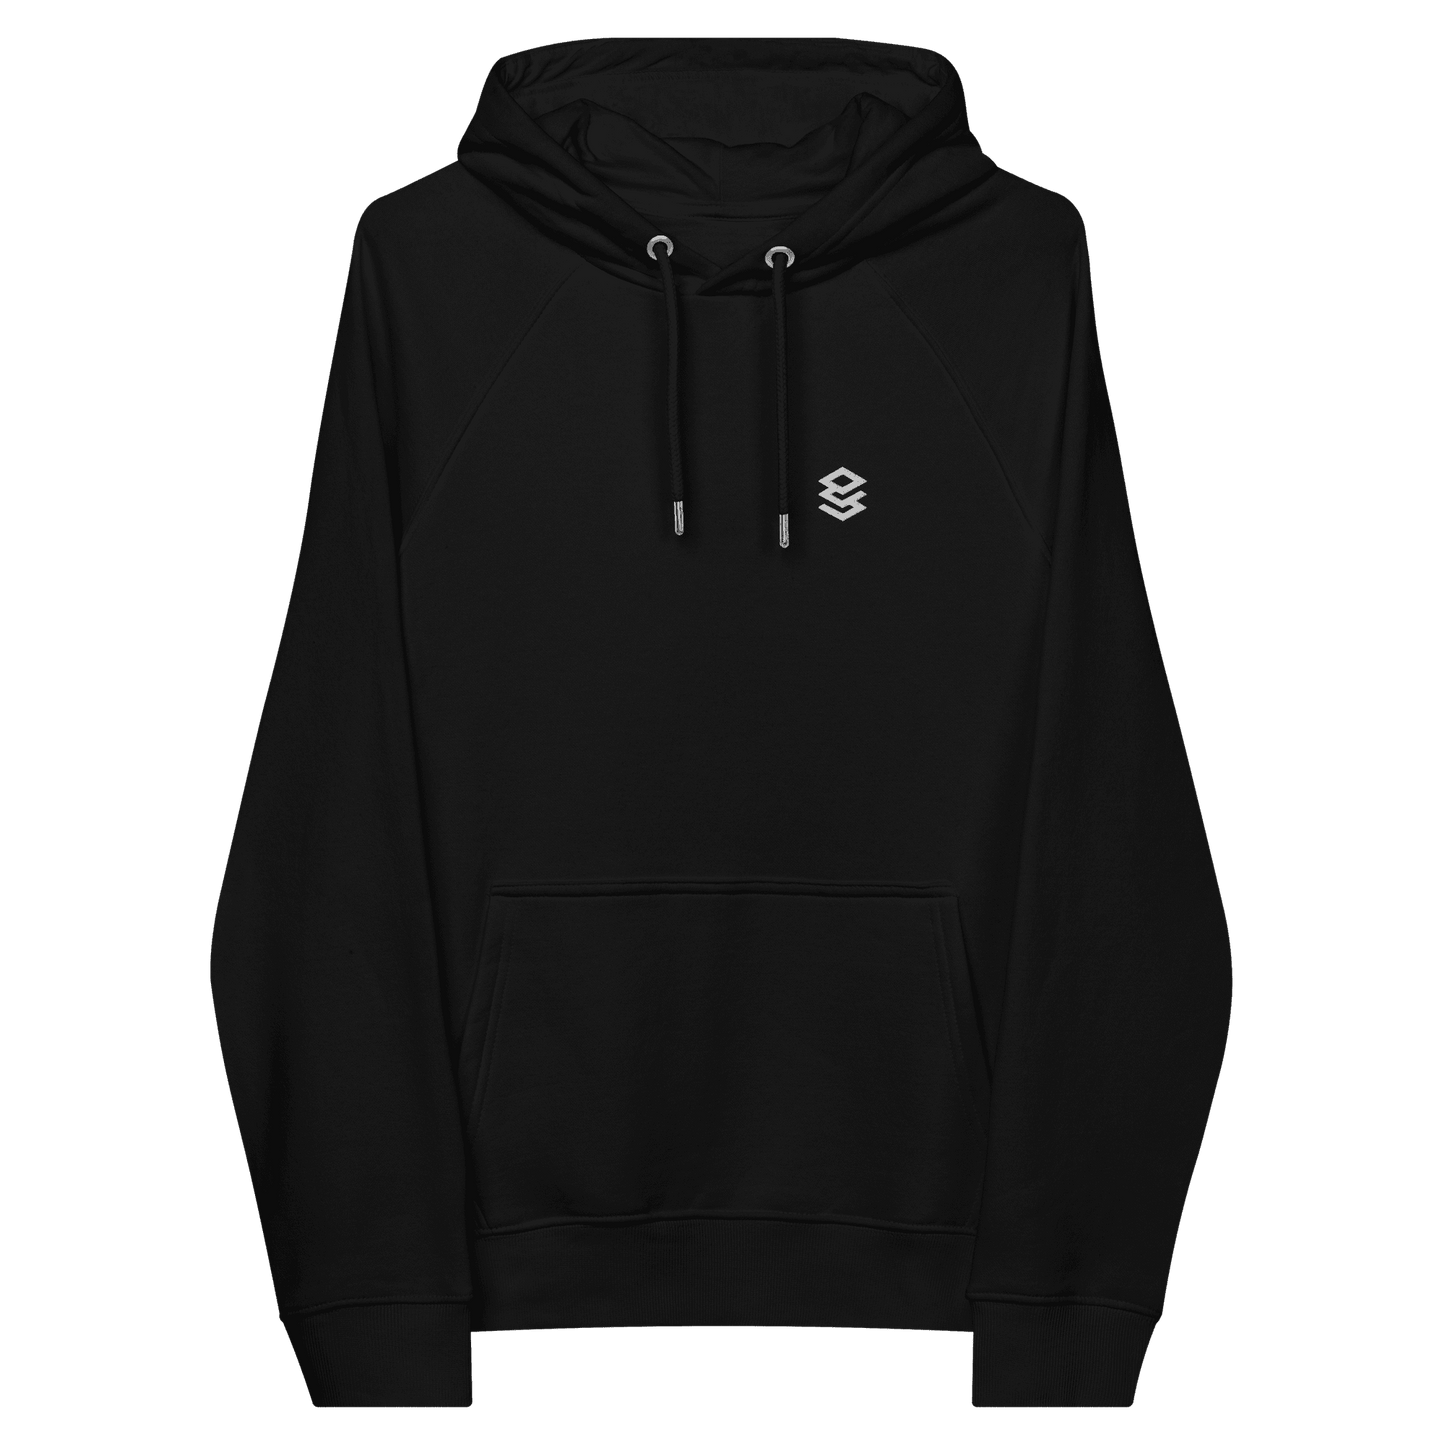 Platform engineering unisex hoodie